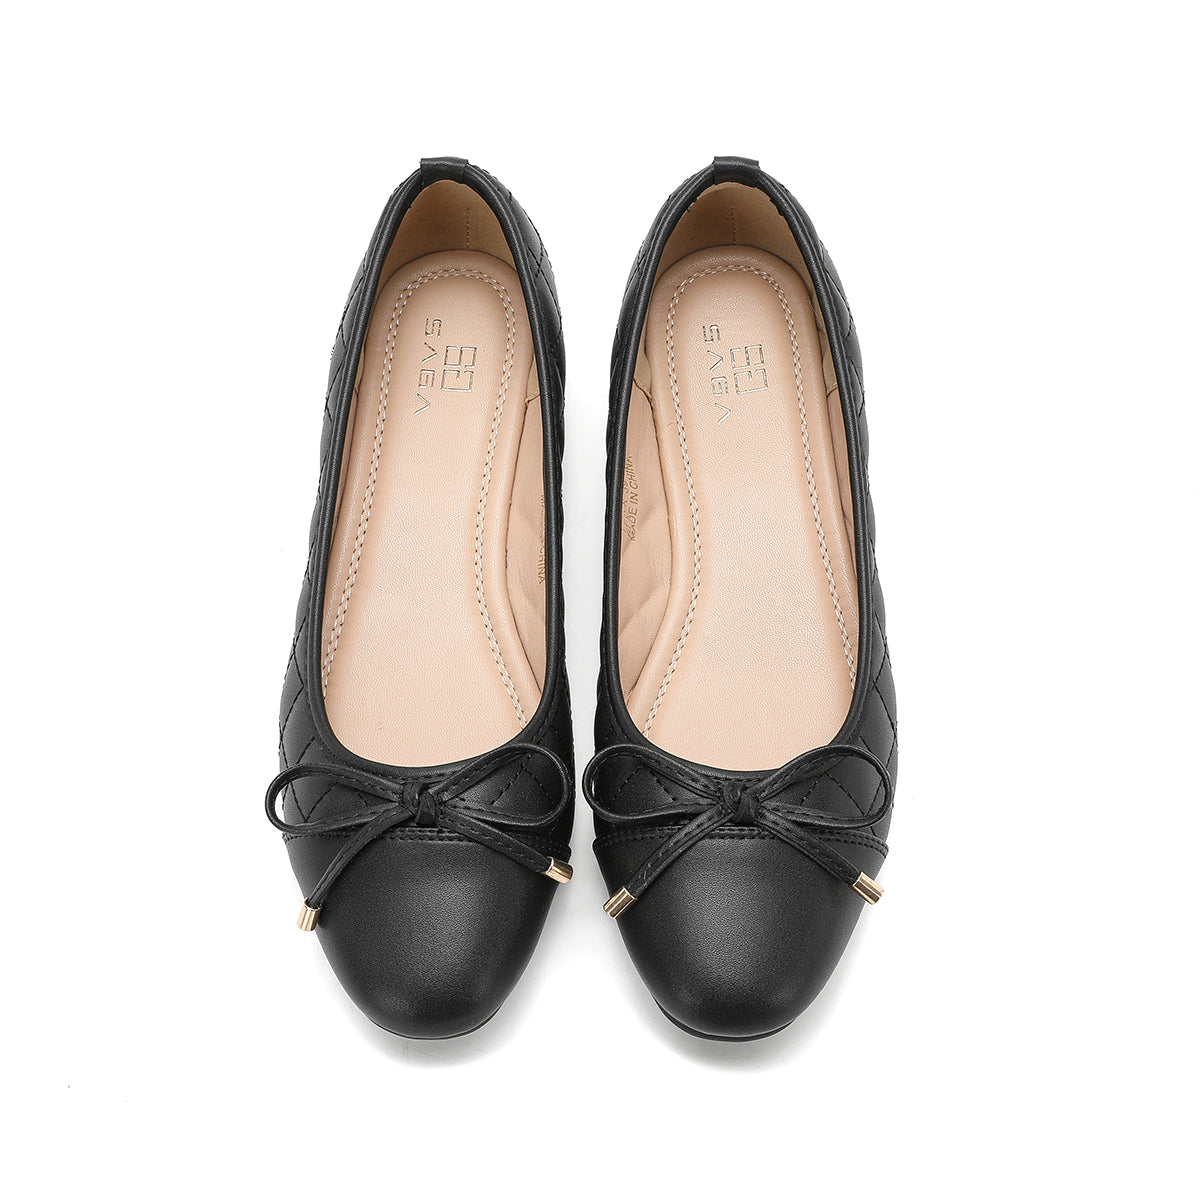 حذاء ساغا نسائي أسود من الأعلى بتصميم مبطن وعقدة أنيقة.